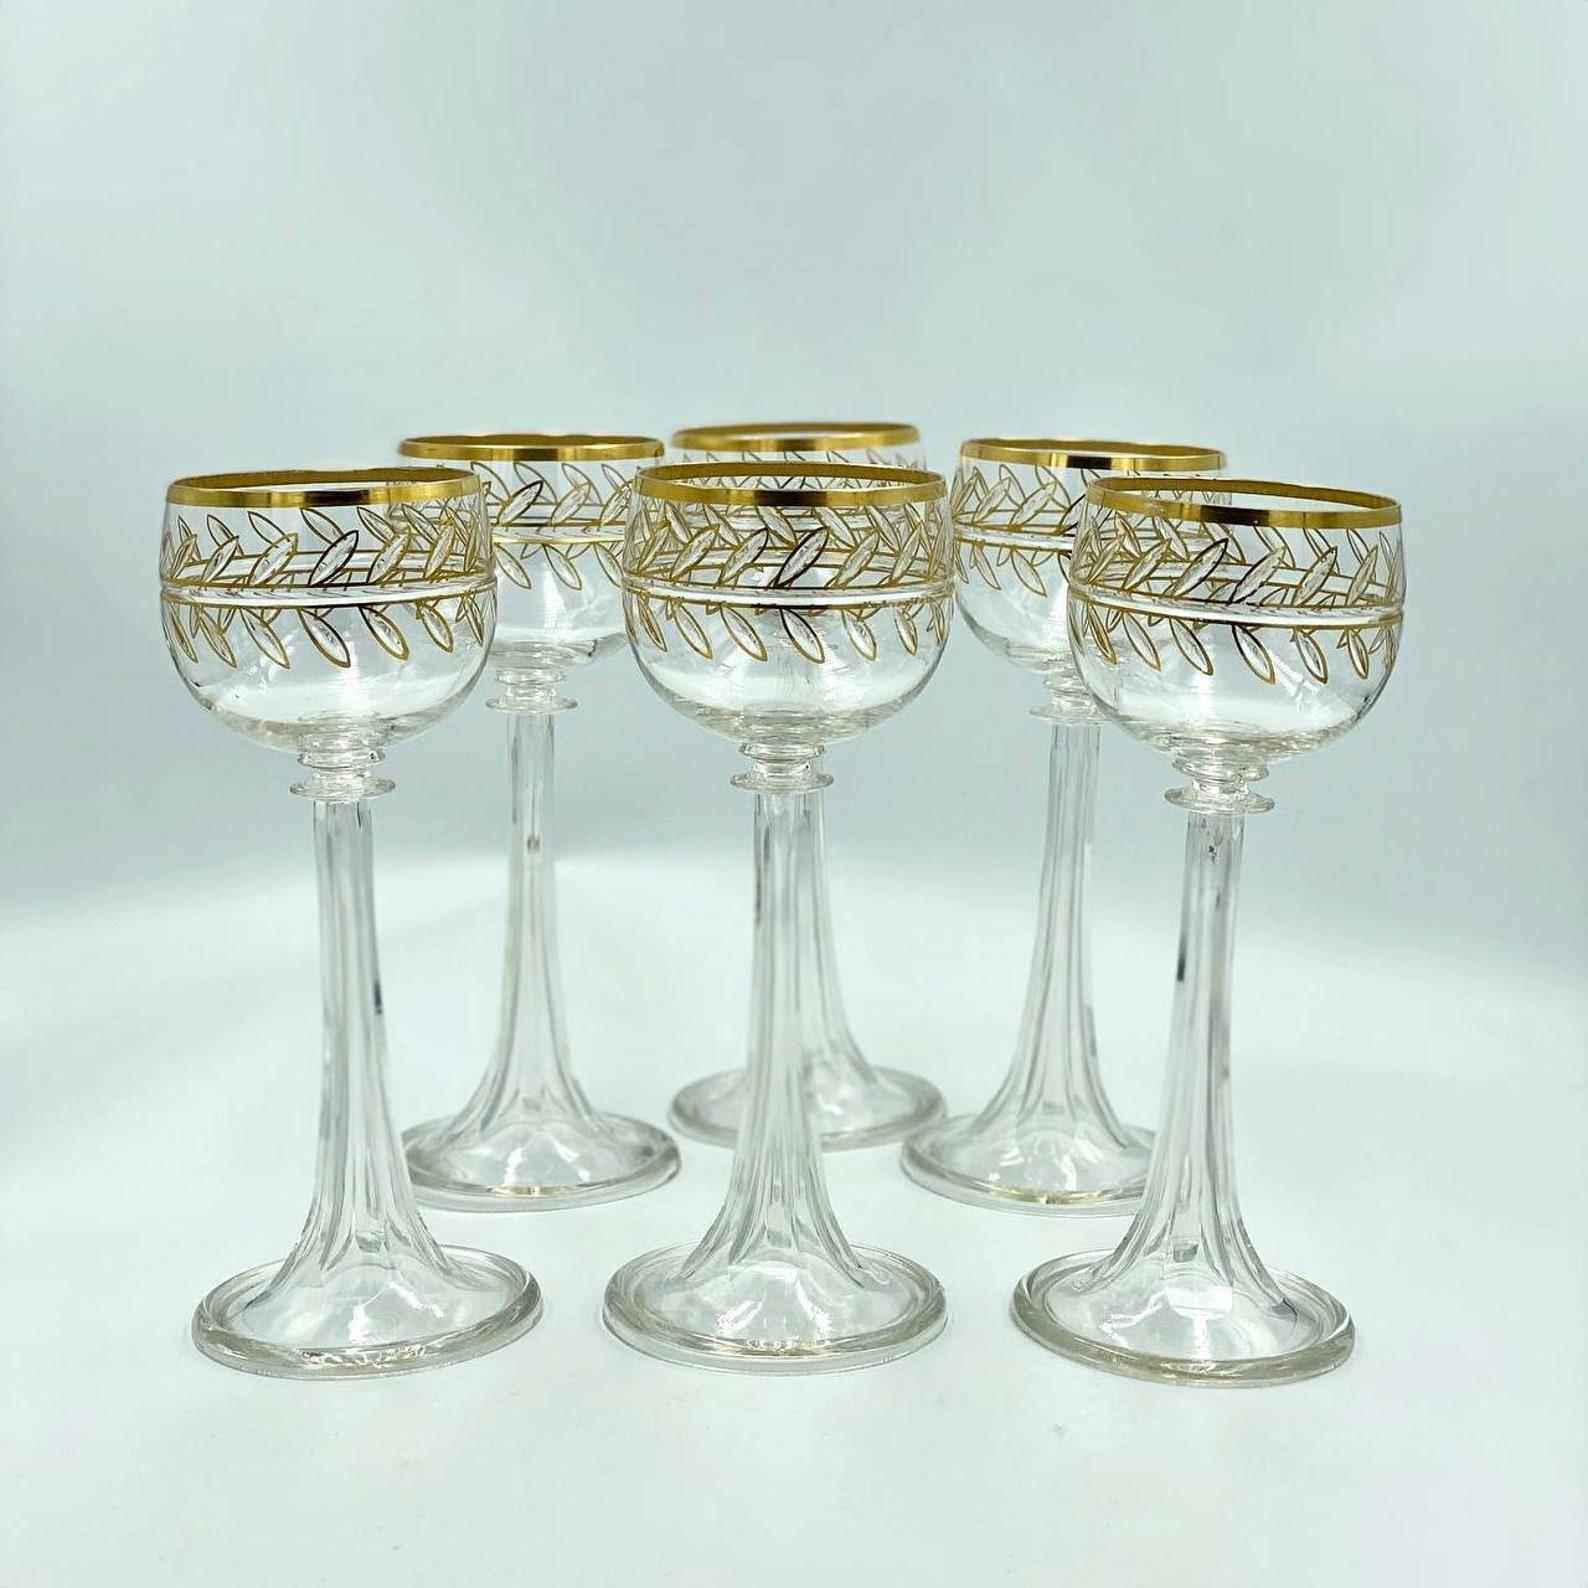 Crystal Gold Rimmed Champagnergläser, Weingläser 6-pc Set, 24K Gold, 1900s'.

 Kristallglaswaren sind aus hochwertigem, lichtdurchlässigem und haltbarem MATERIAL hergestellt. 

 Diese von passionierten Künstlern handgefertigten und entworfenen